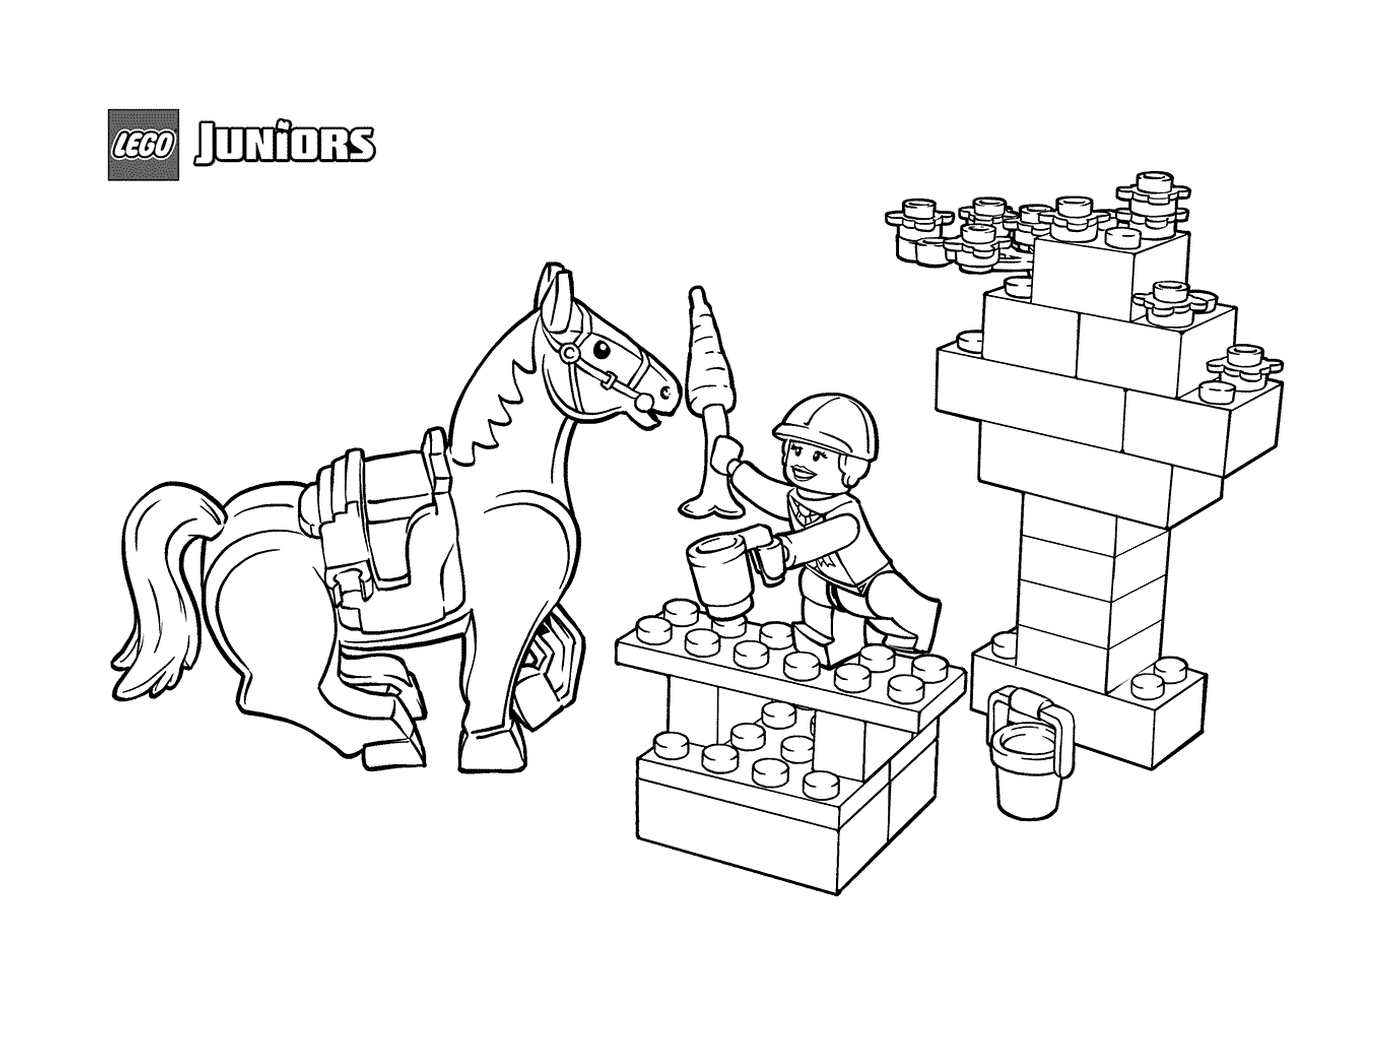  Snack equine in LEGO Junior 